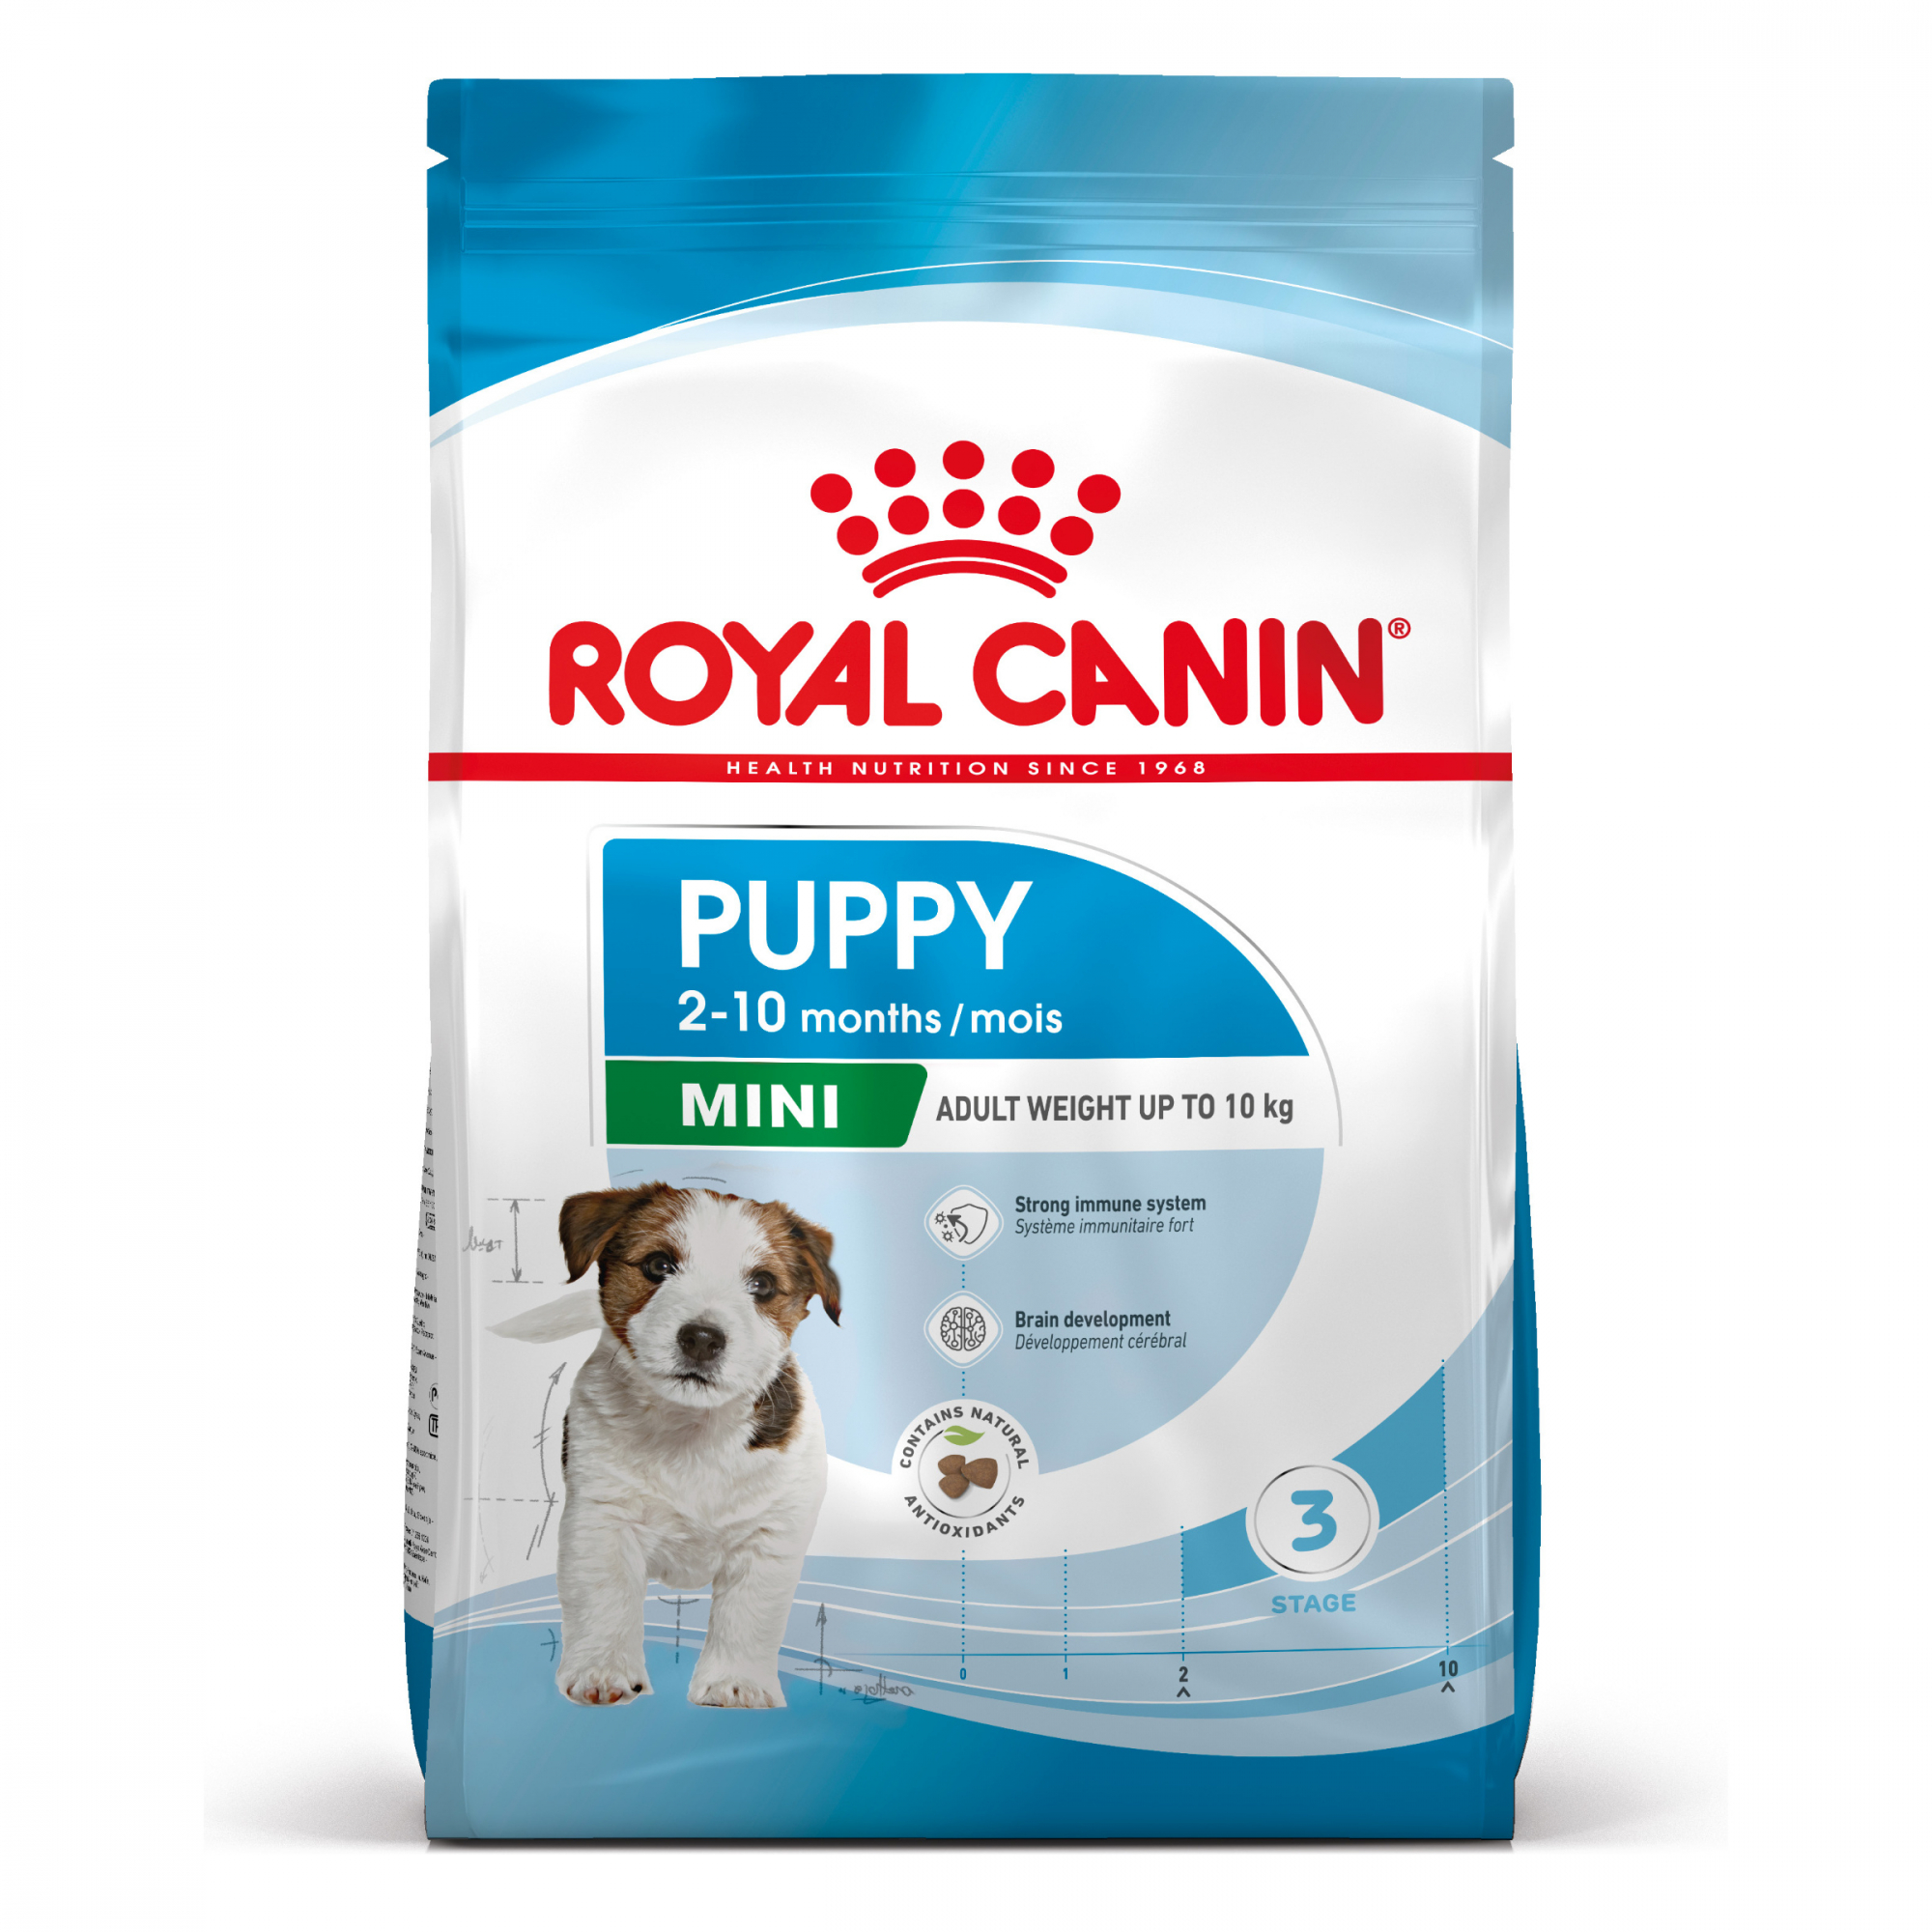 Royal Canin Puppy Mini pour petit chiot de 2 à 10 mois